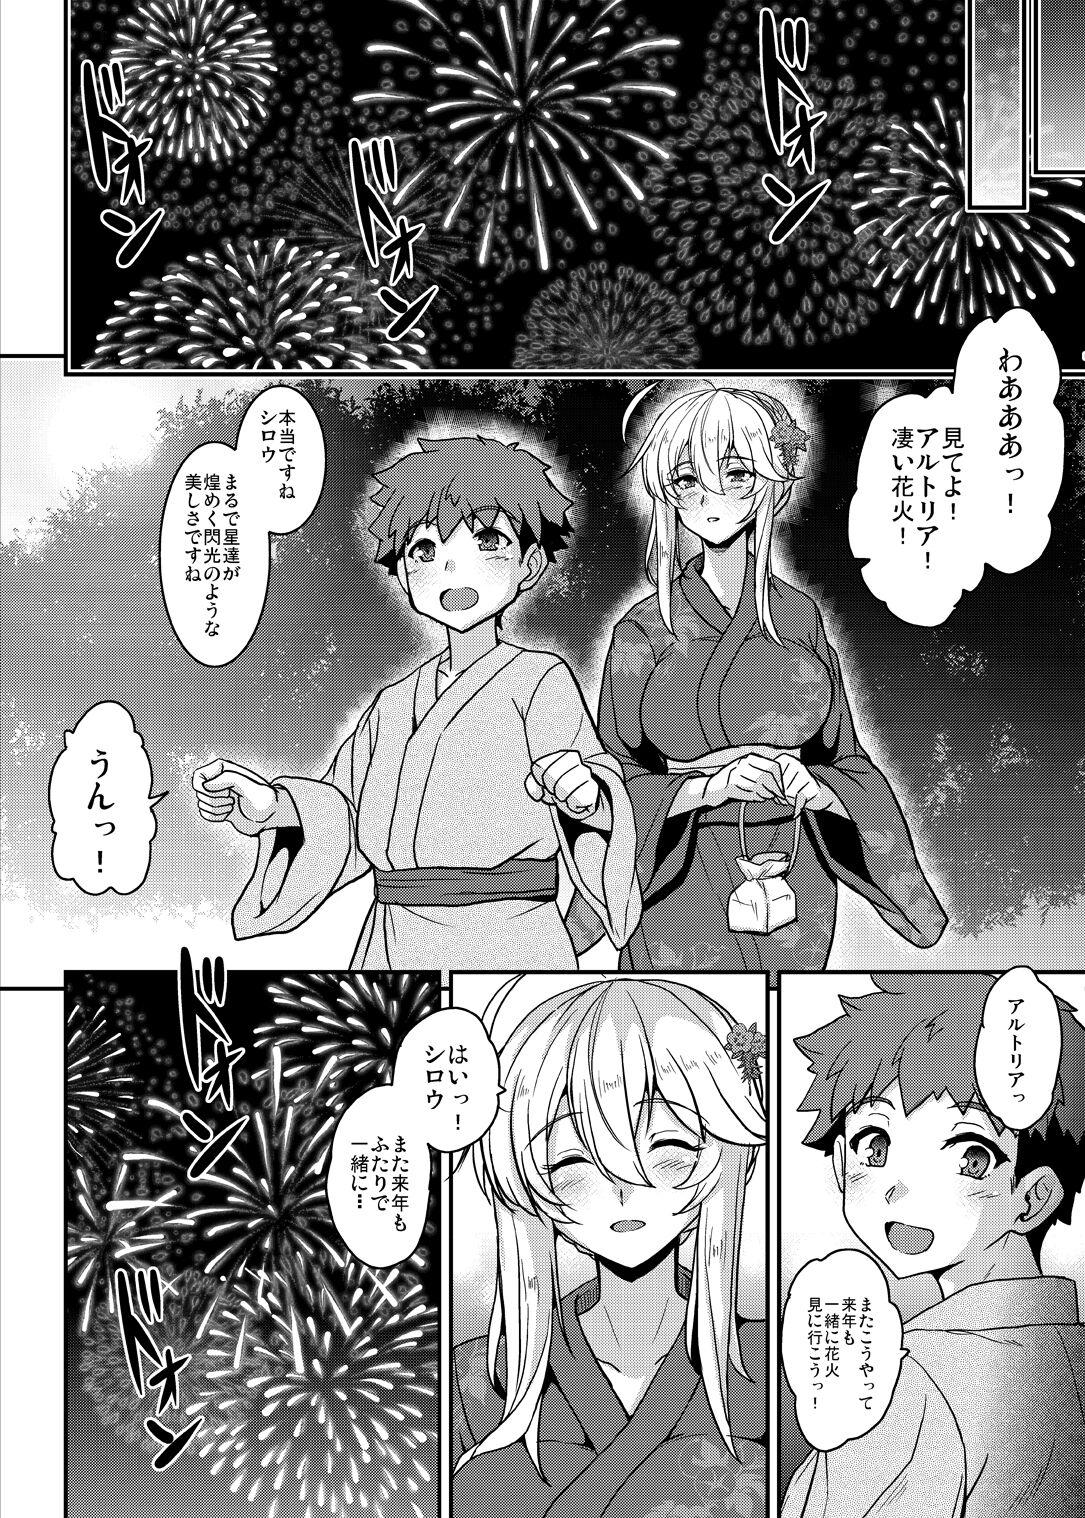 Tonari no Chichiou-sama Memories Vol. 2 159